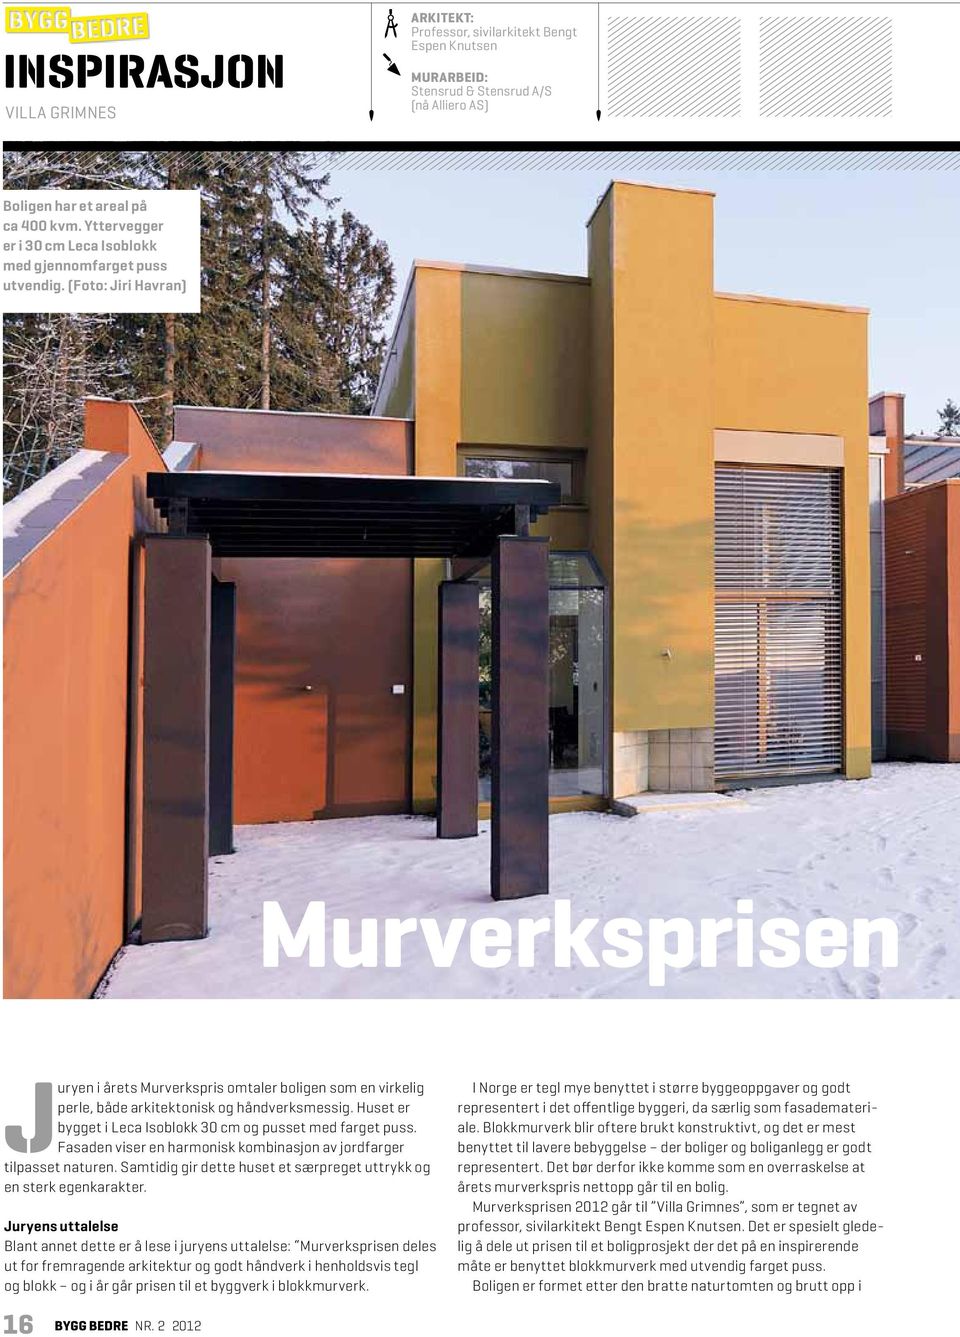 (Foto: Jiri Havran) Murverksprisen Juryen i årets Murverkspris omtaler boligen som en virkelig perle, både arkitektonisk og håndverksmessig.